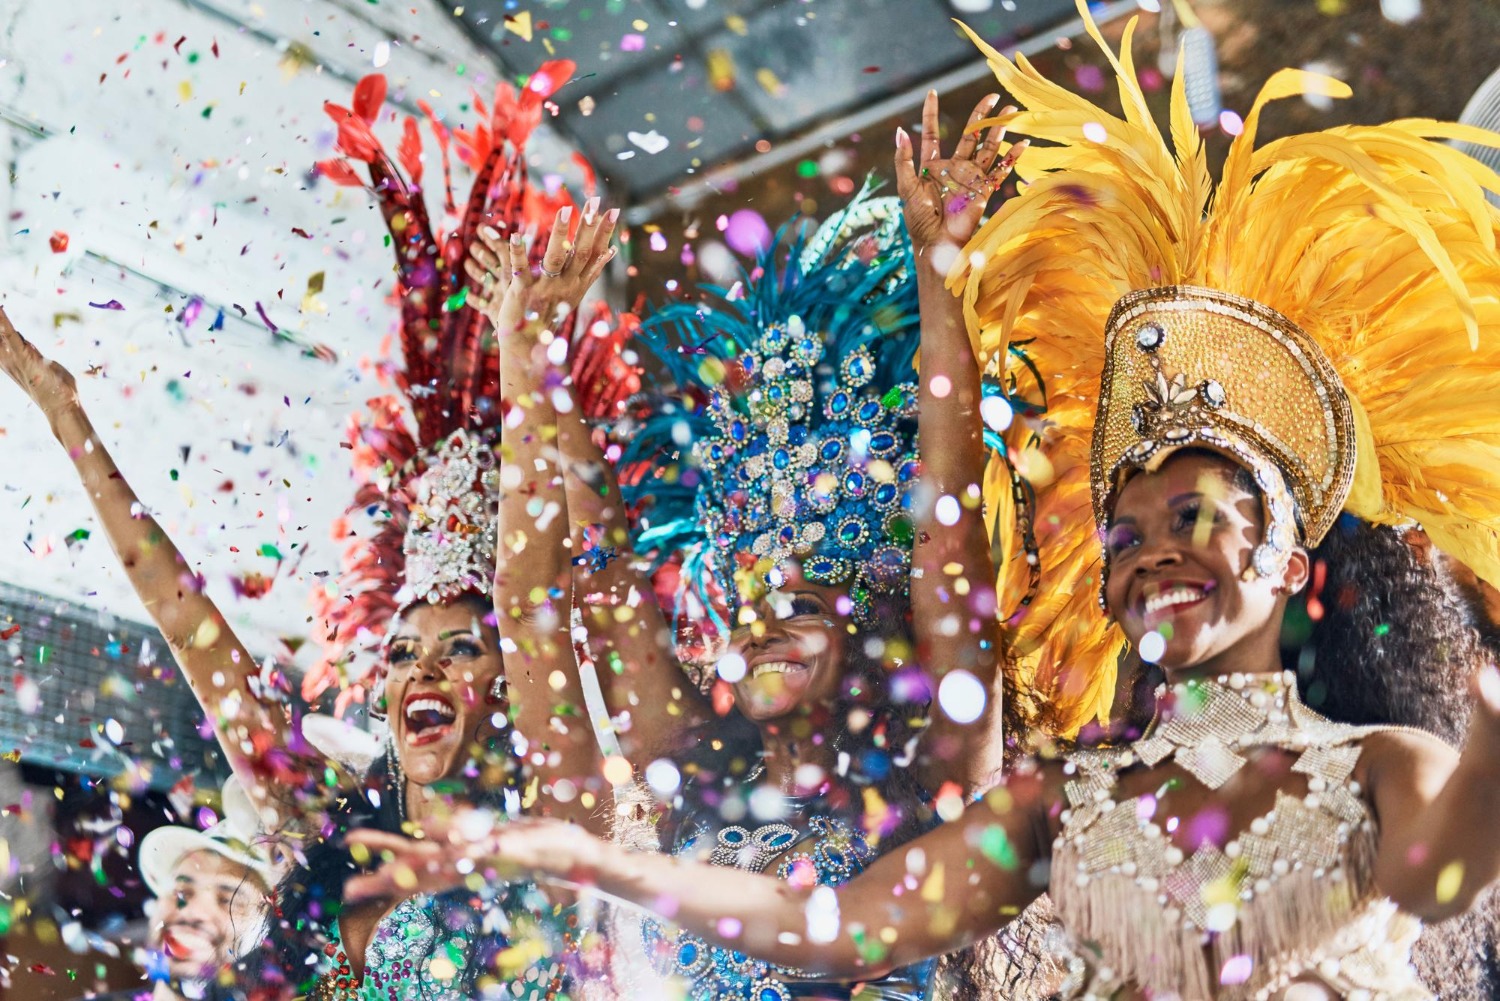 Los Mejores Carnavales del Mundo. Fiesta de Color y Alegría